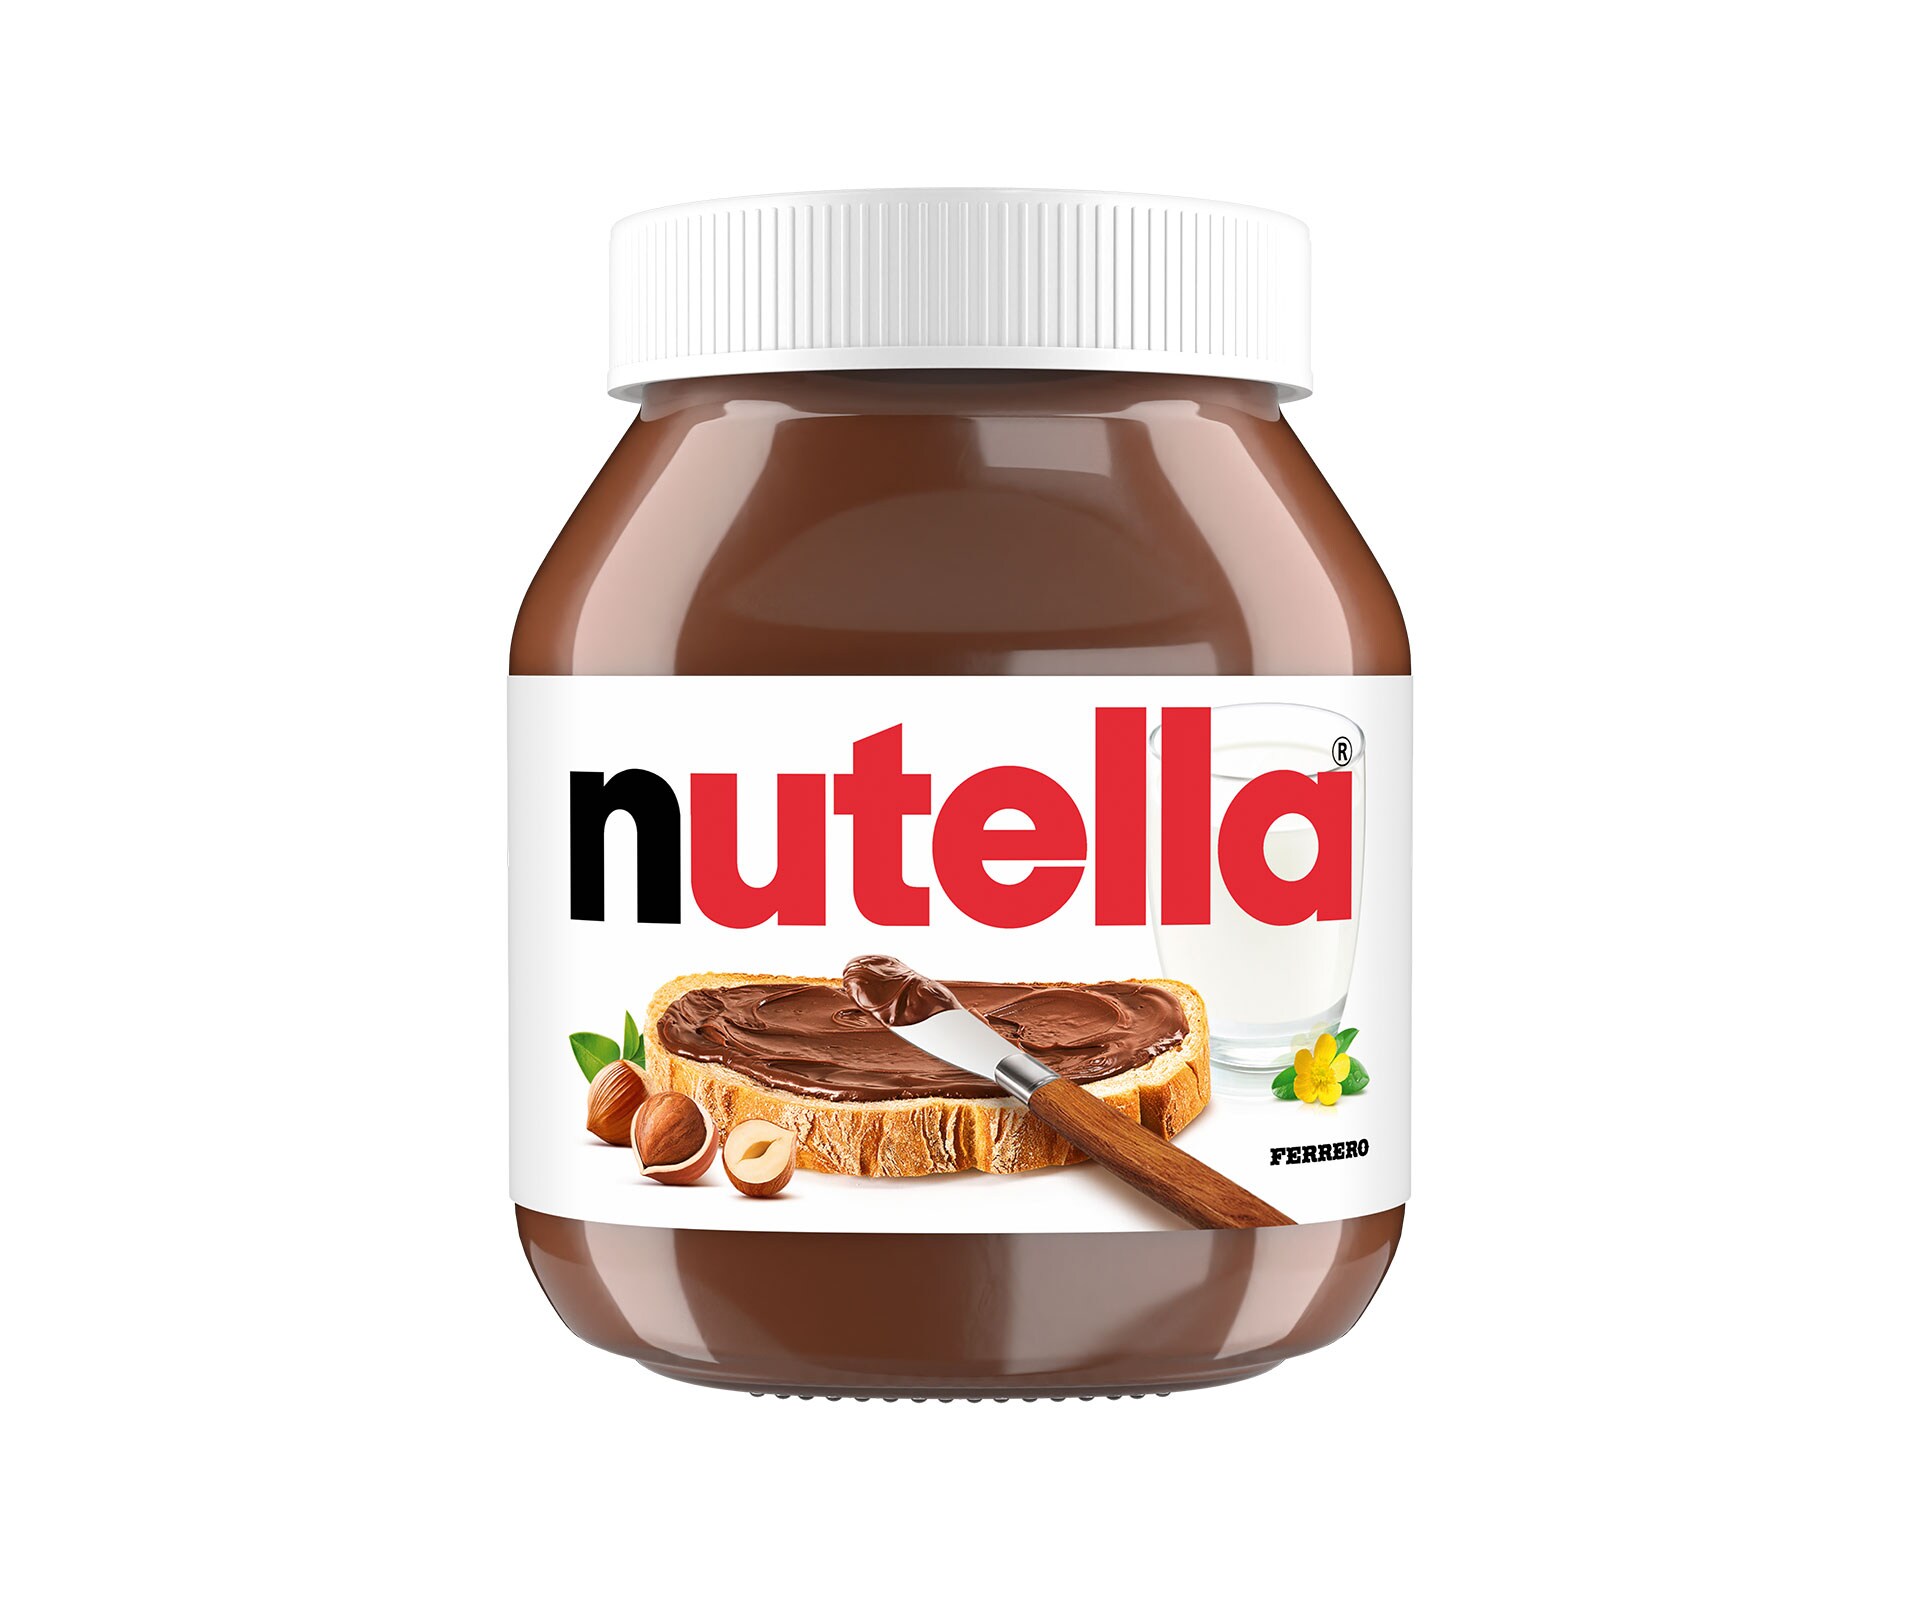 10kg of Nutella. : r/pics